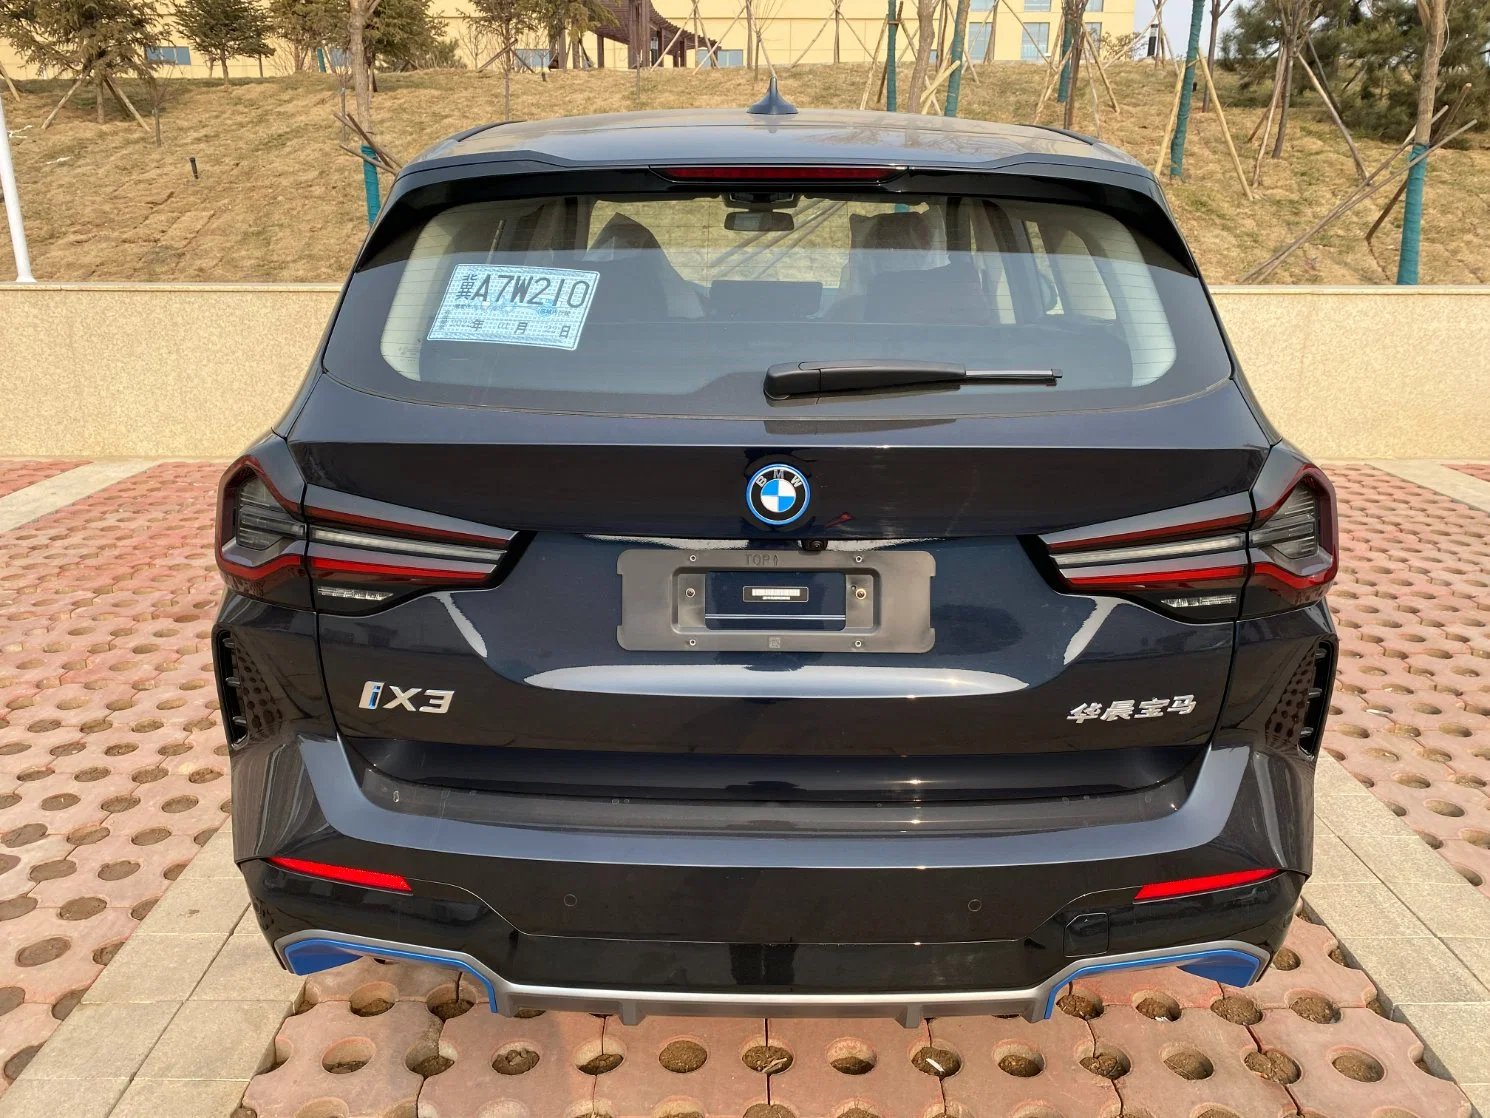 2022 BMW IX3 utilisé voiture utilisée la voiture électrique véhicule électrique avec un bon prix